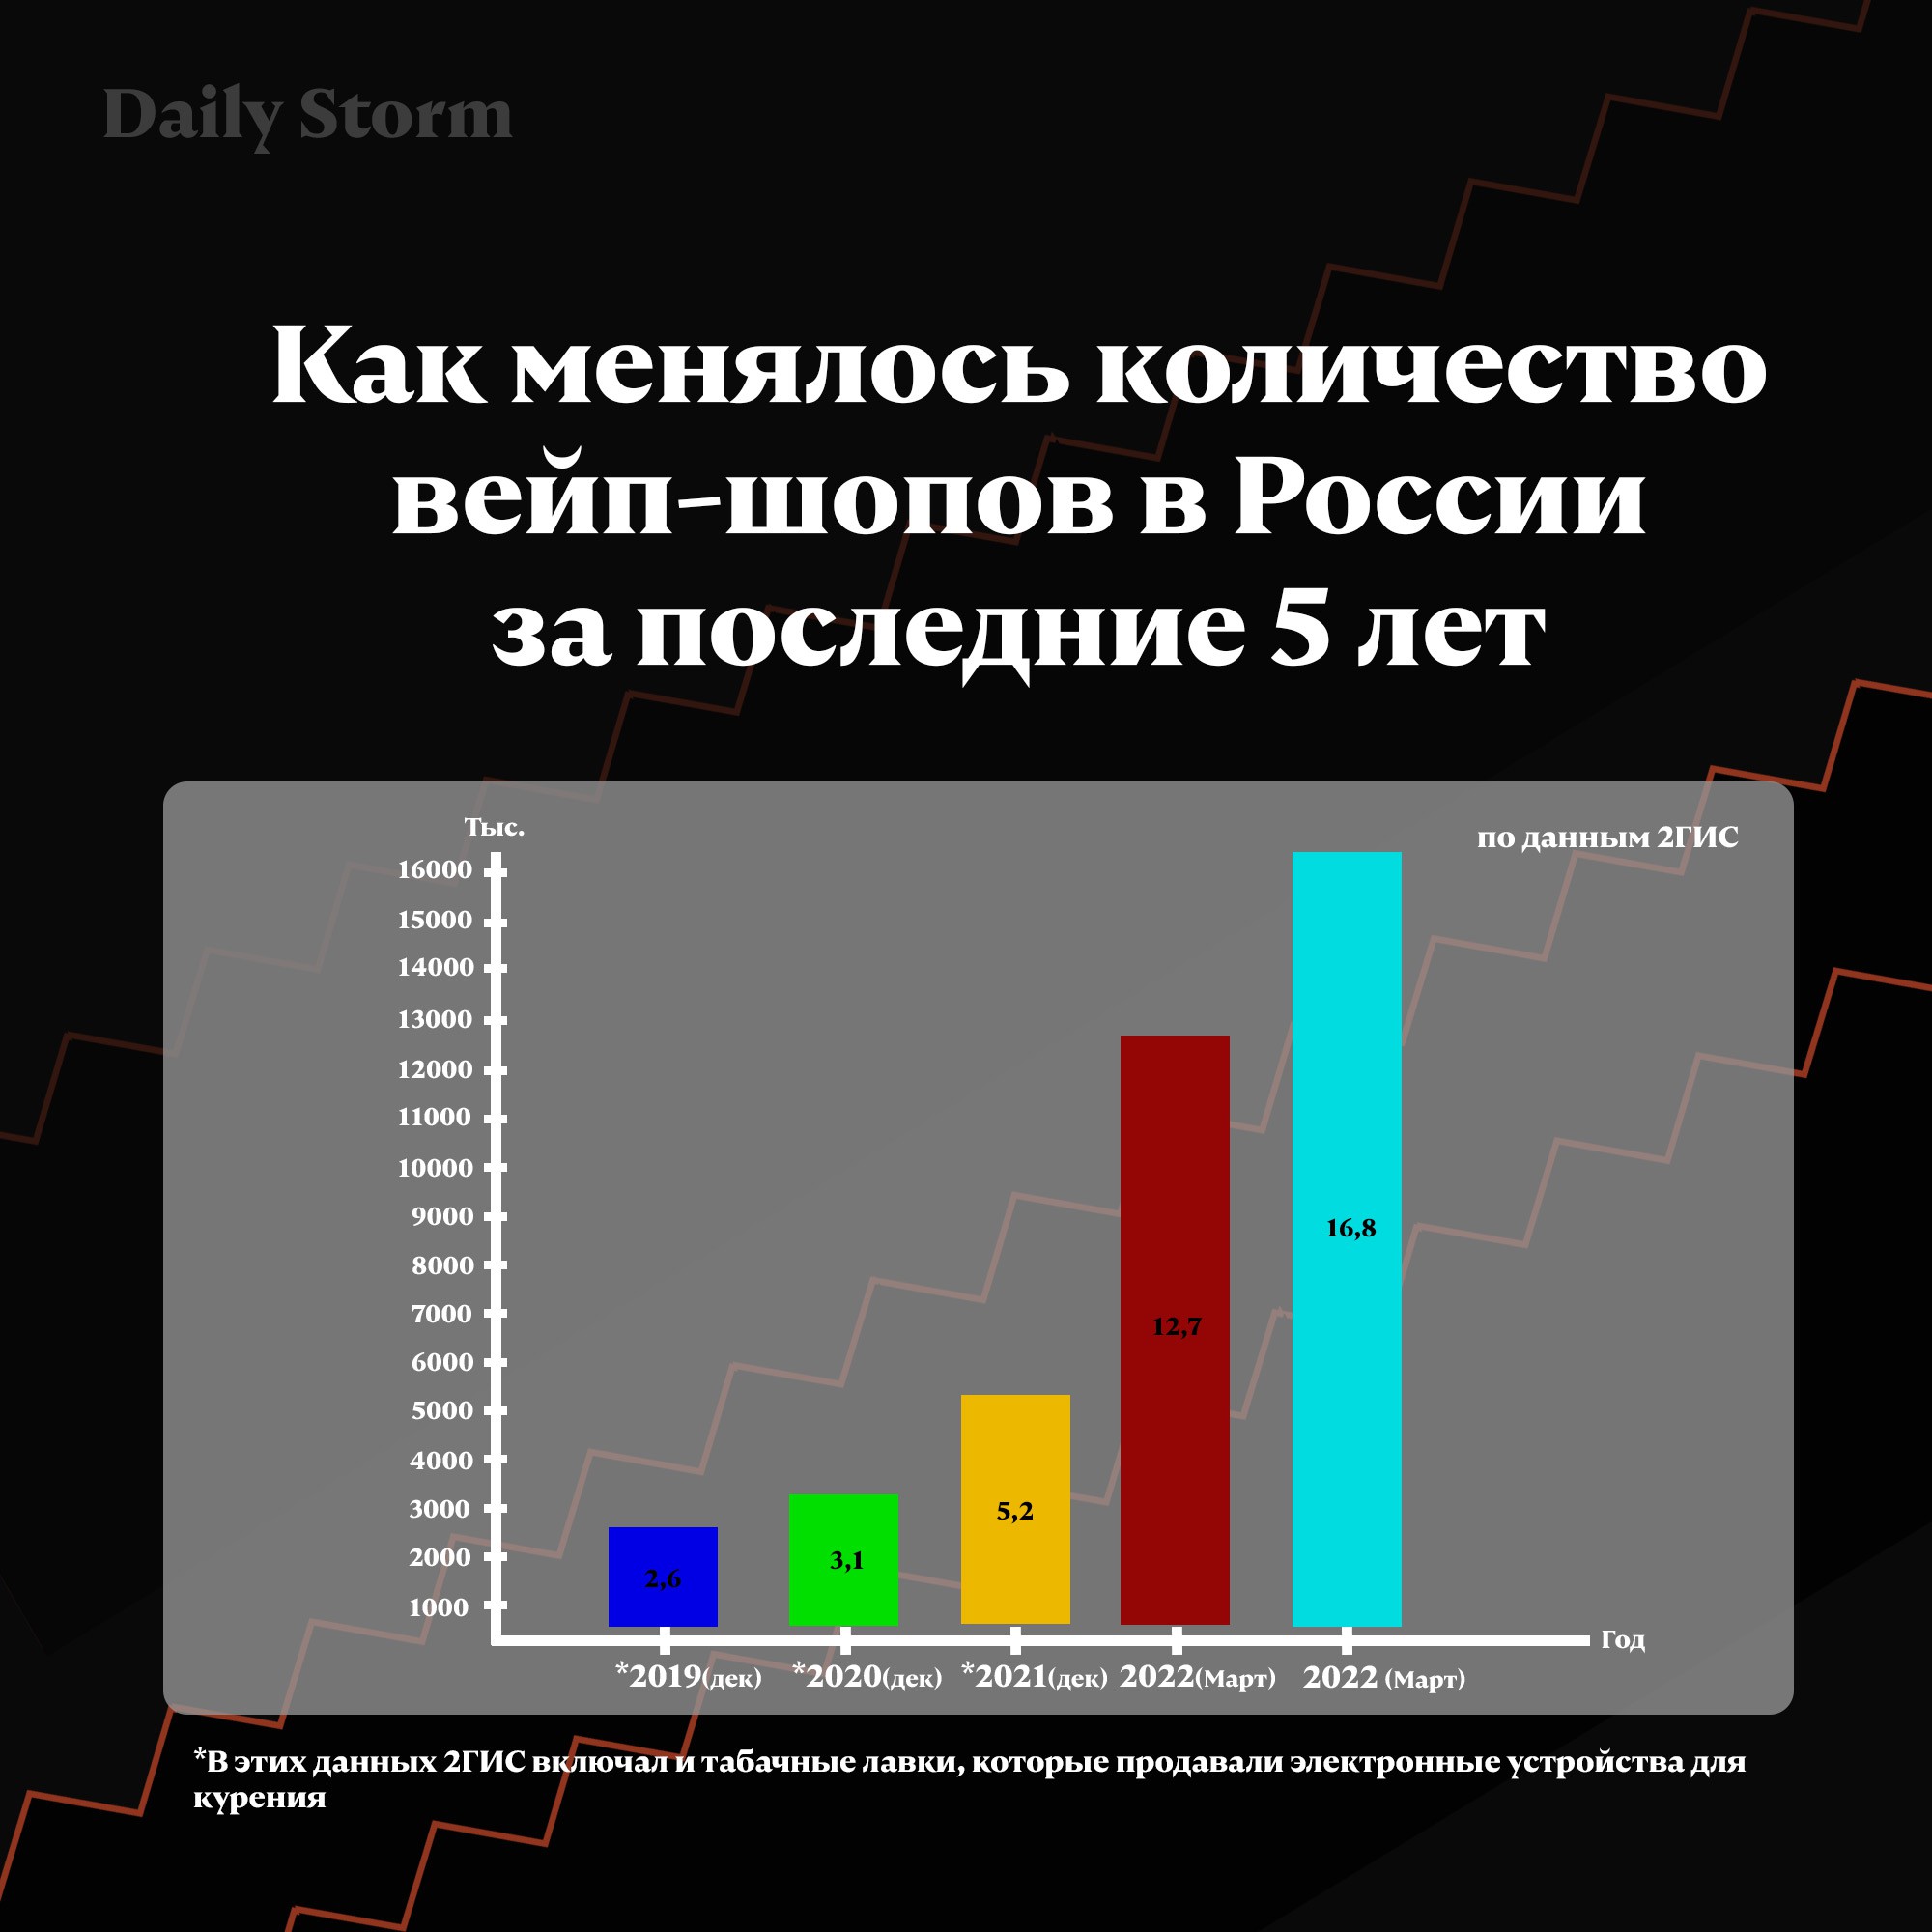 Количество вейп-шопов в России декабрь 2019 — март 2023 (по данным 2ГИС))